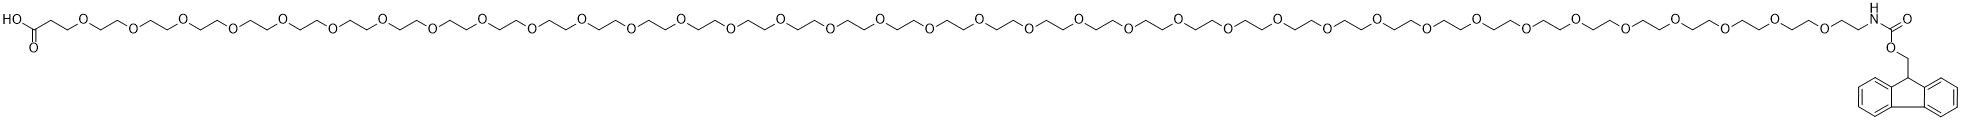 Fmoc-NH-PEG36-acid